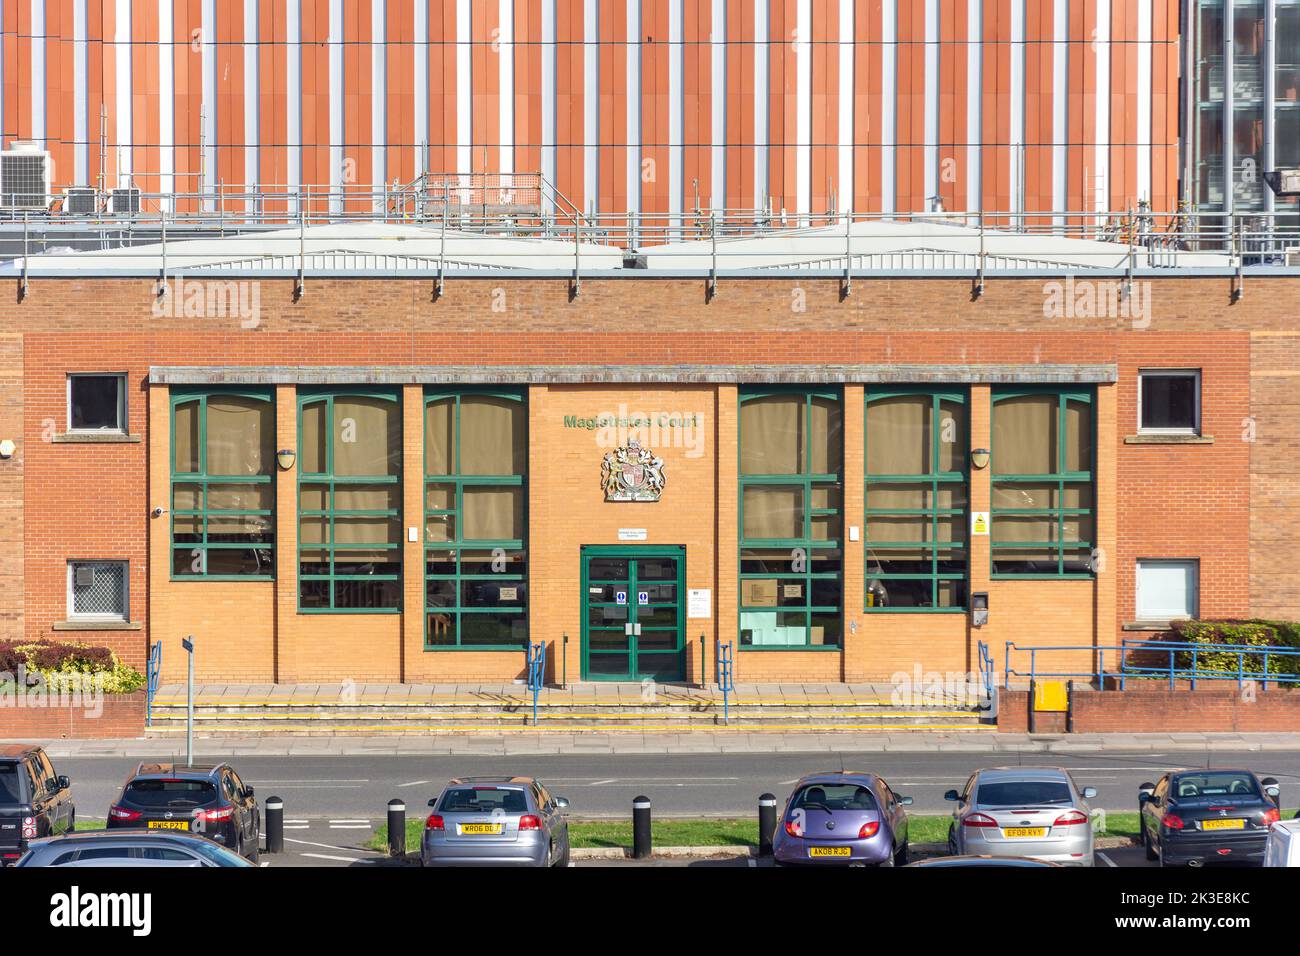 Entrée à Swindon Magistrates' court, Princes Street, Swindon, Wiltshire, Angleterre, Royaume-Uni Banque D'Images